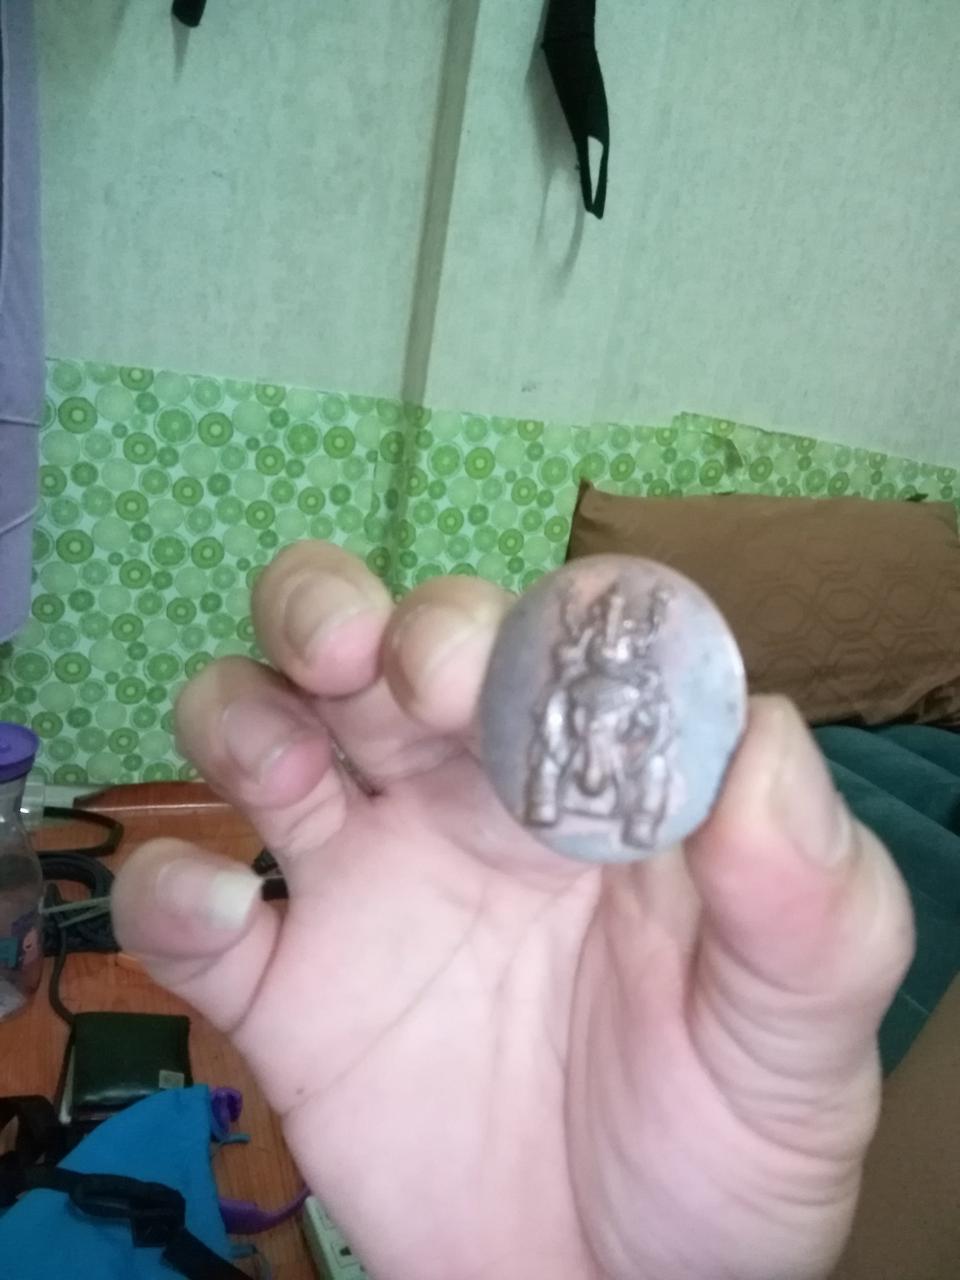 เหรียญ​พระ​พิฆเนศ​ พ.ศ.2555​ วัดเขาสูงแจ่มฟ้า​ อ.ท่ามะกา​ จ.กาญจนบุรี​ รูปเล็กที่ 1